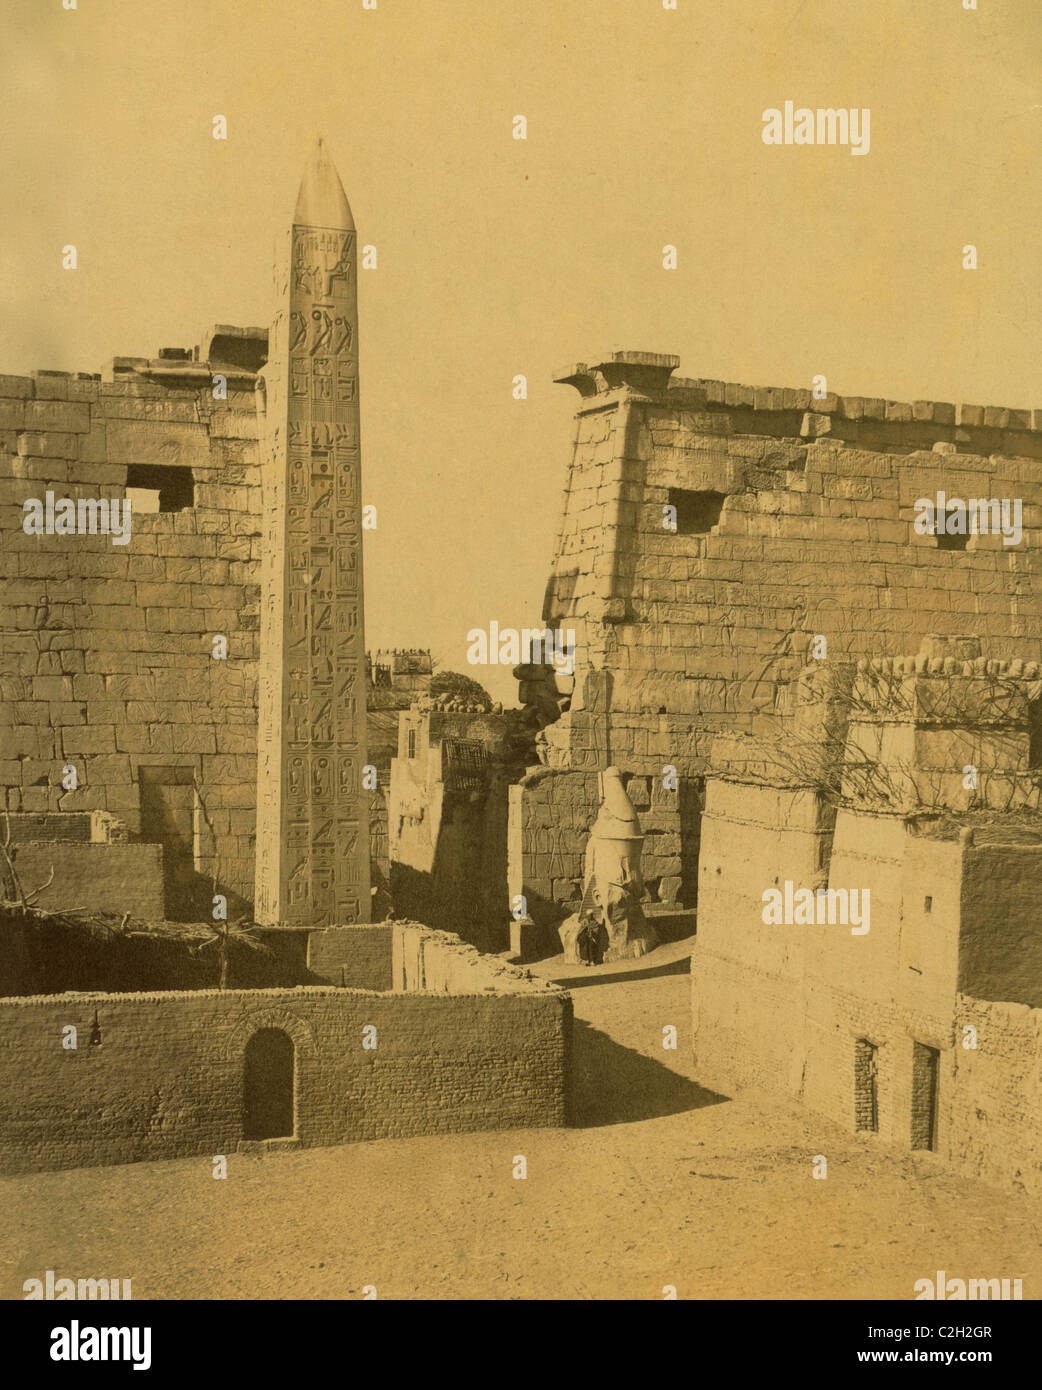 Les pylônes et obélisque, Thèbes (Louxor), Égypte Banque D'Images